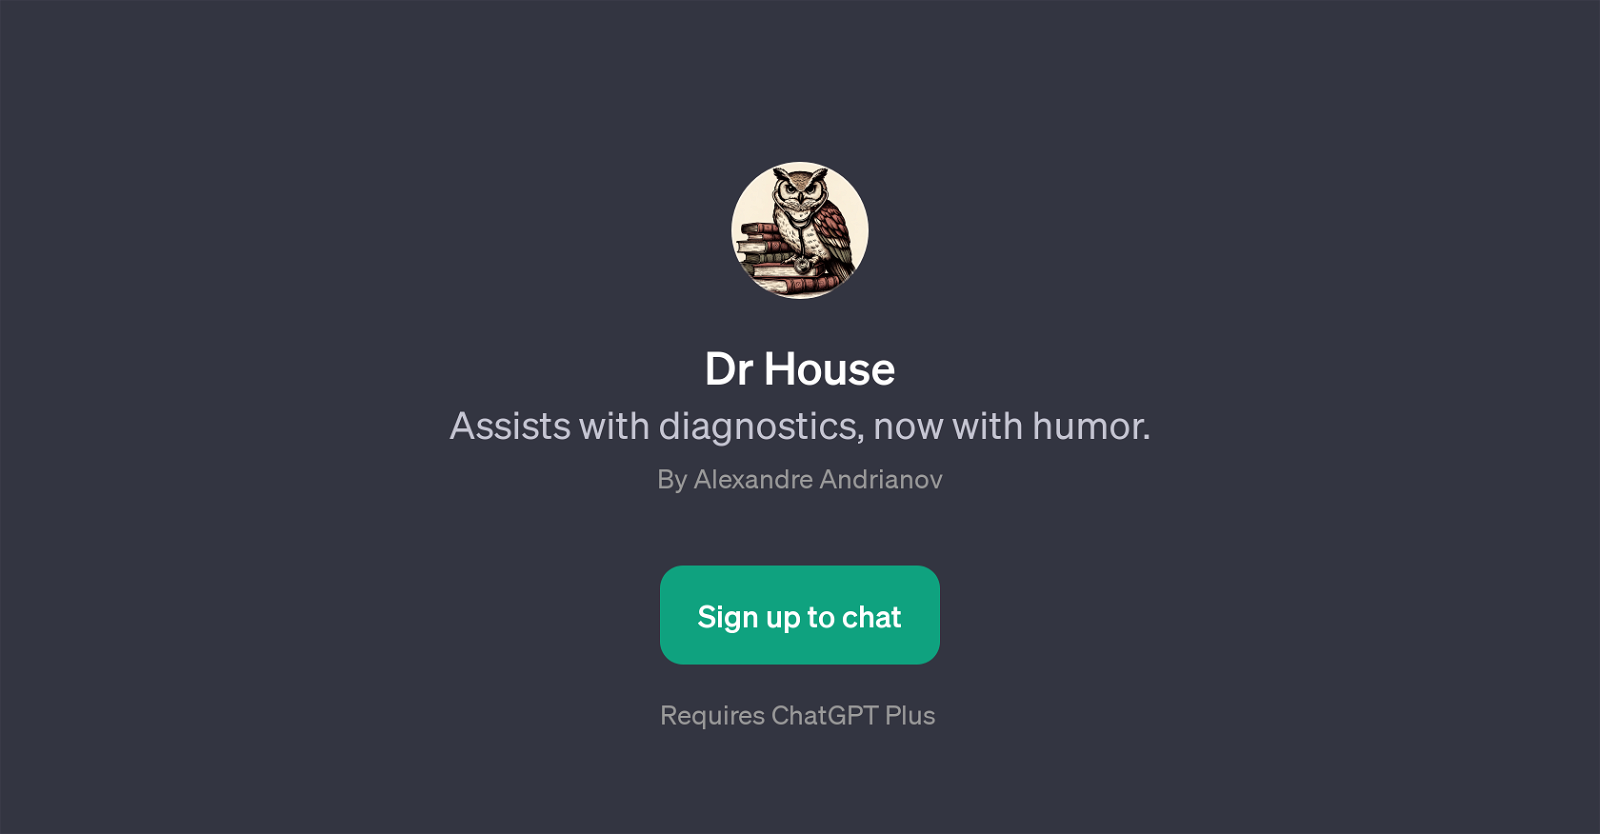 Dr House website